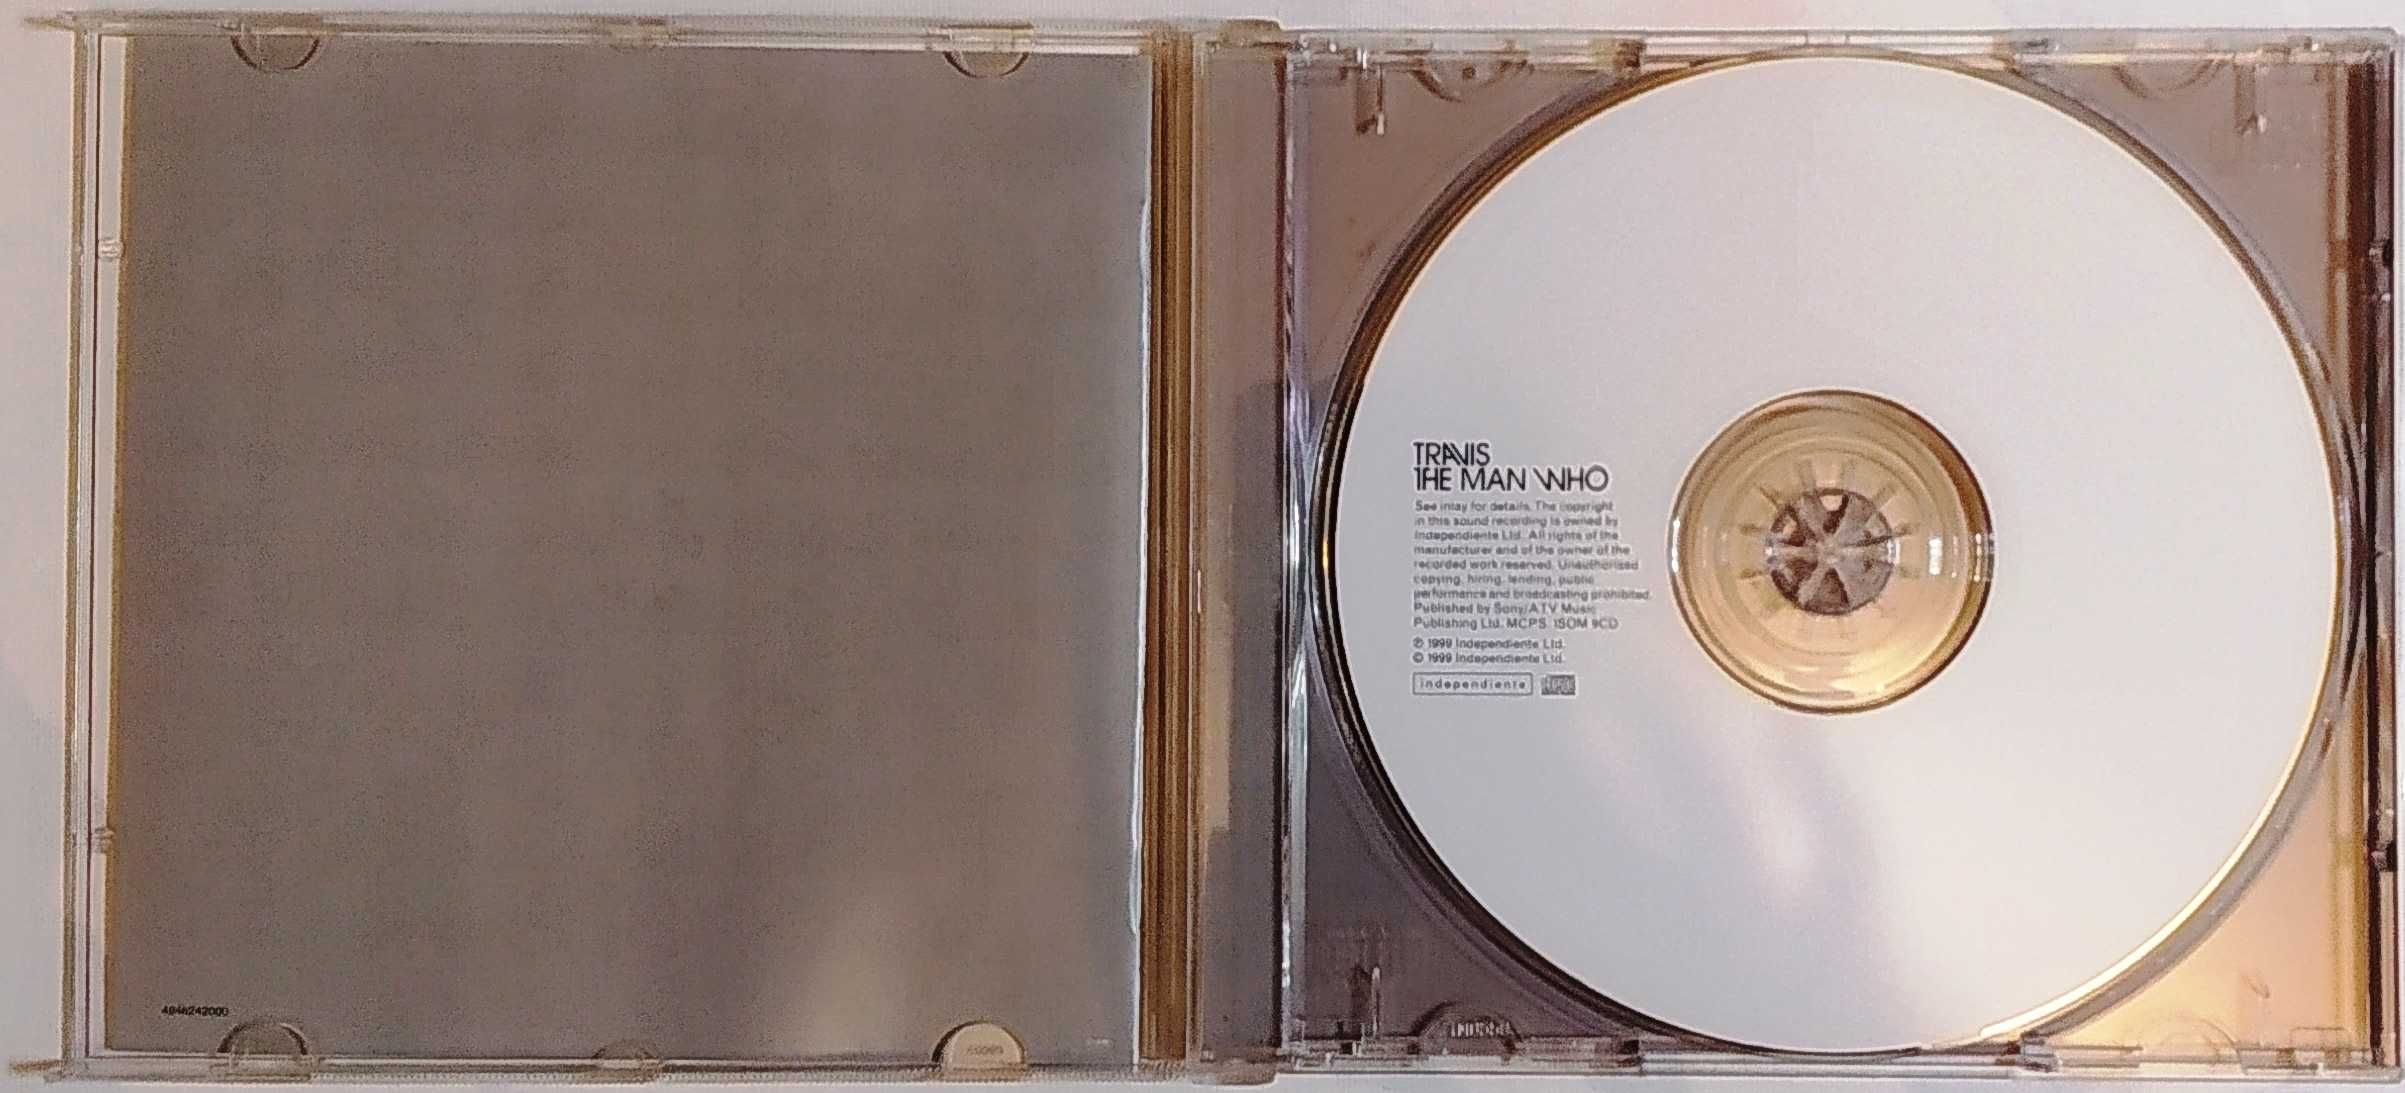 Фірменний CD Travis - The man who 1999